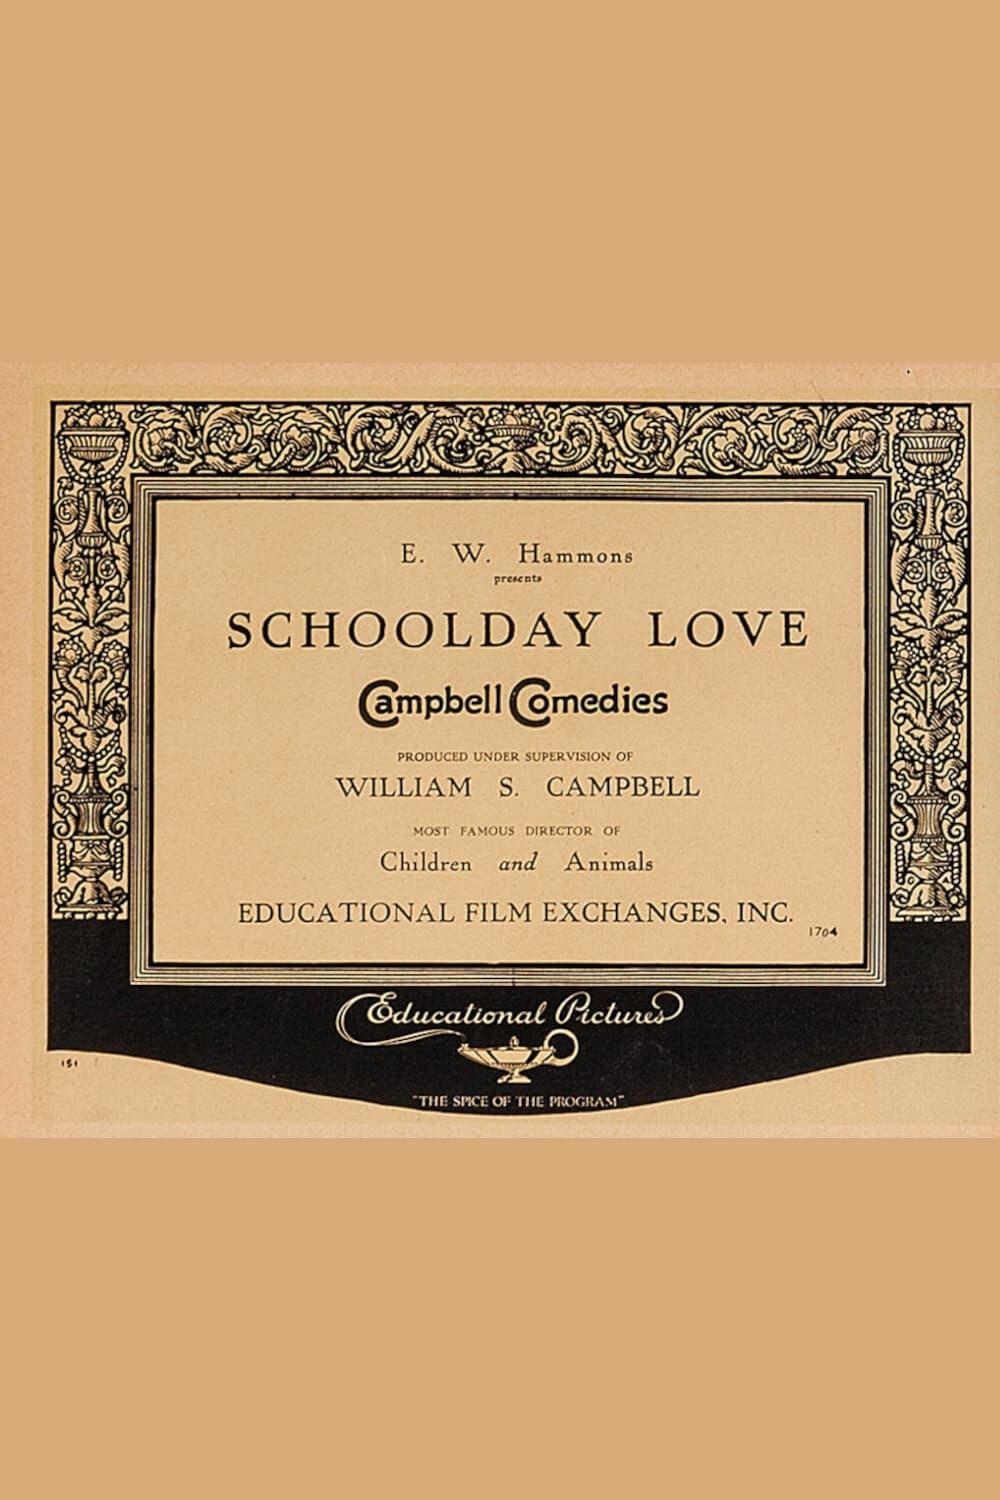 Schoolday Love poster